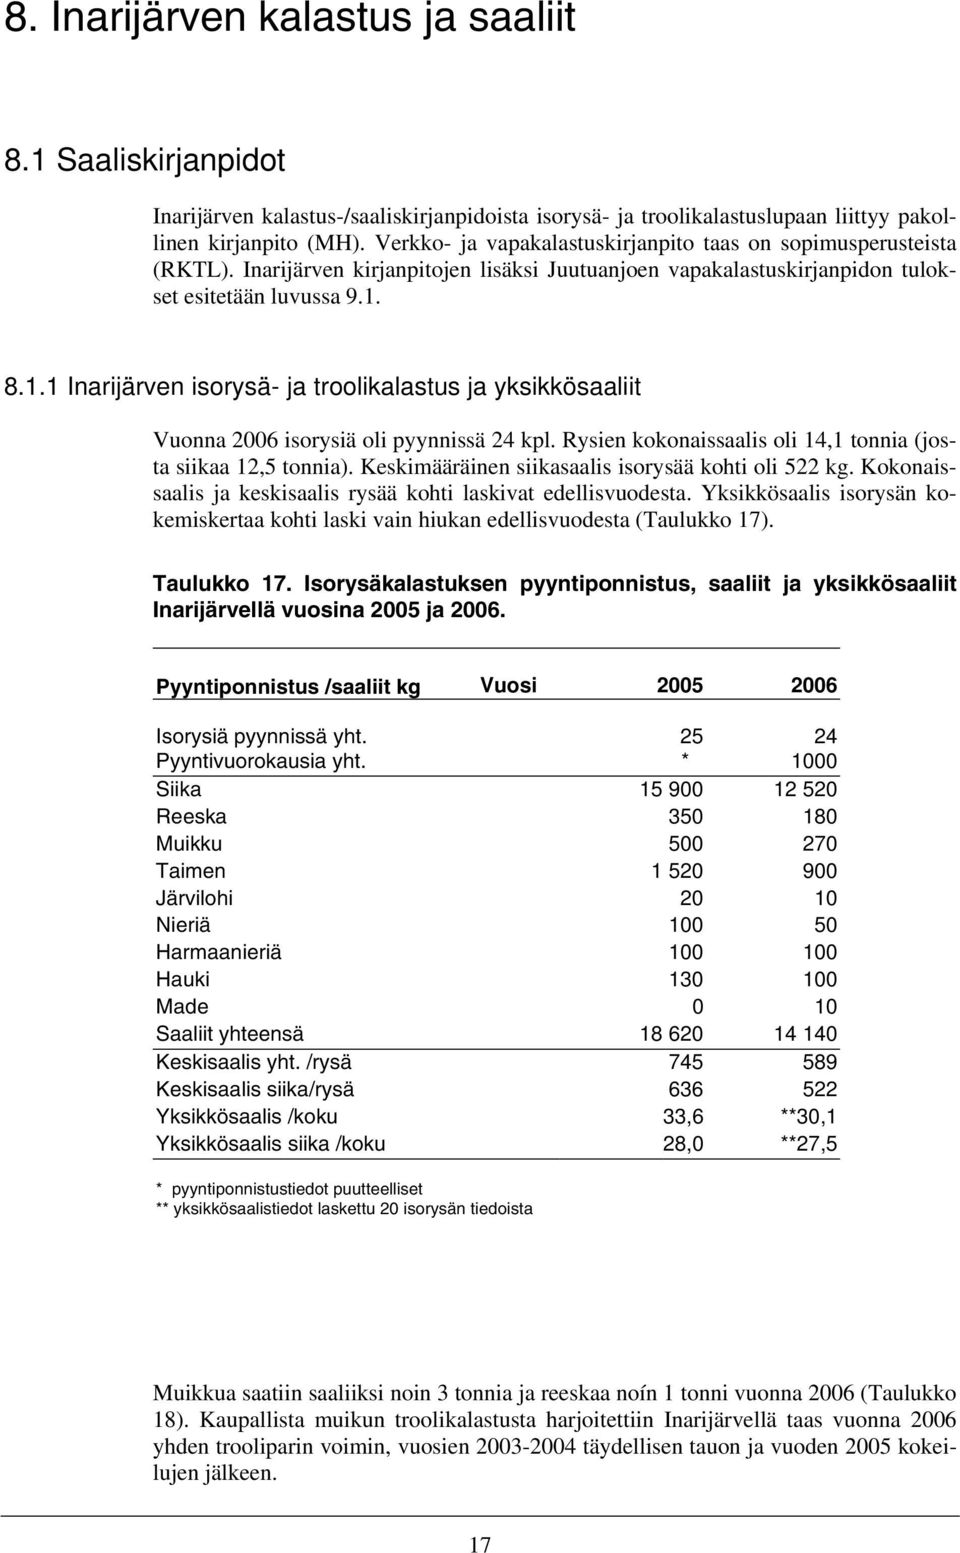 8.1.1 Inarijärven isorysä- ja troolikalastus ja yksikkösaaliit Vuonna 2006 isorysiä oli pyynnissä 24 kpl. Rysien kokonaissaalis oli 14,1 tonnia (josta siikaa 12,5 tonnia).